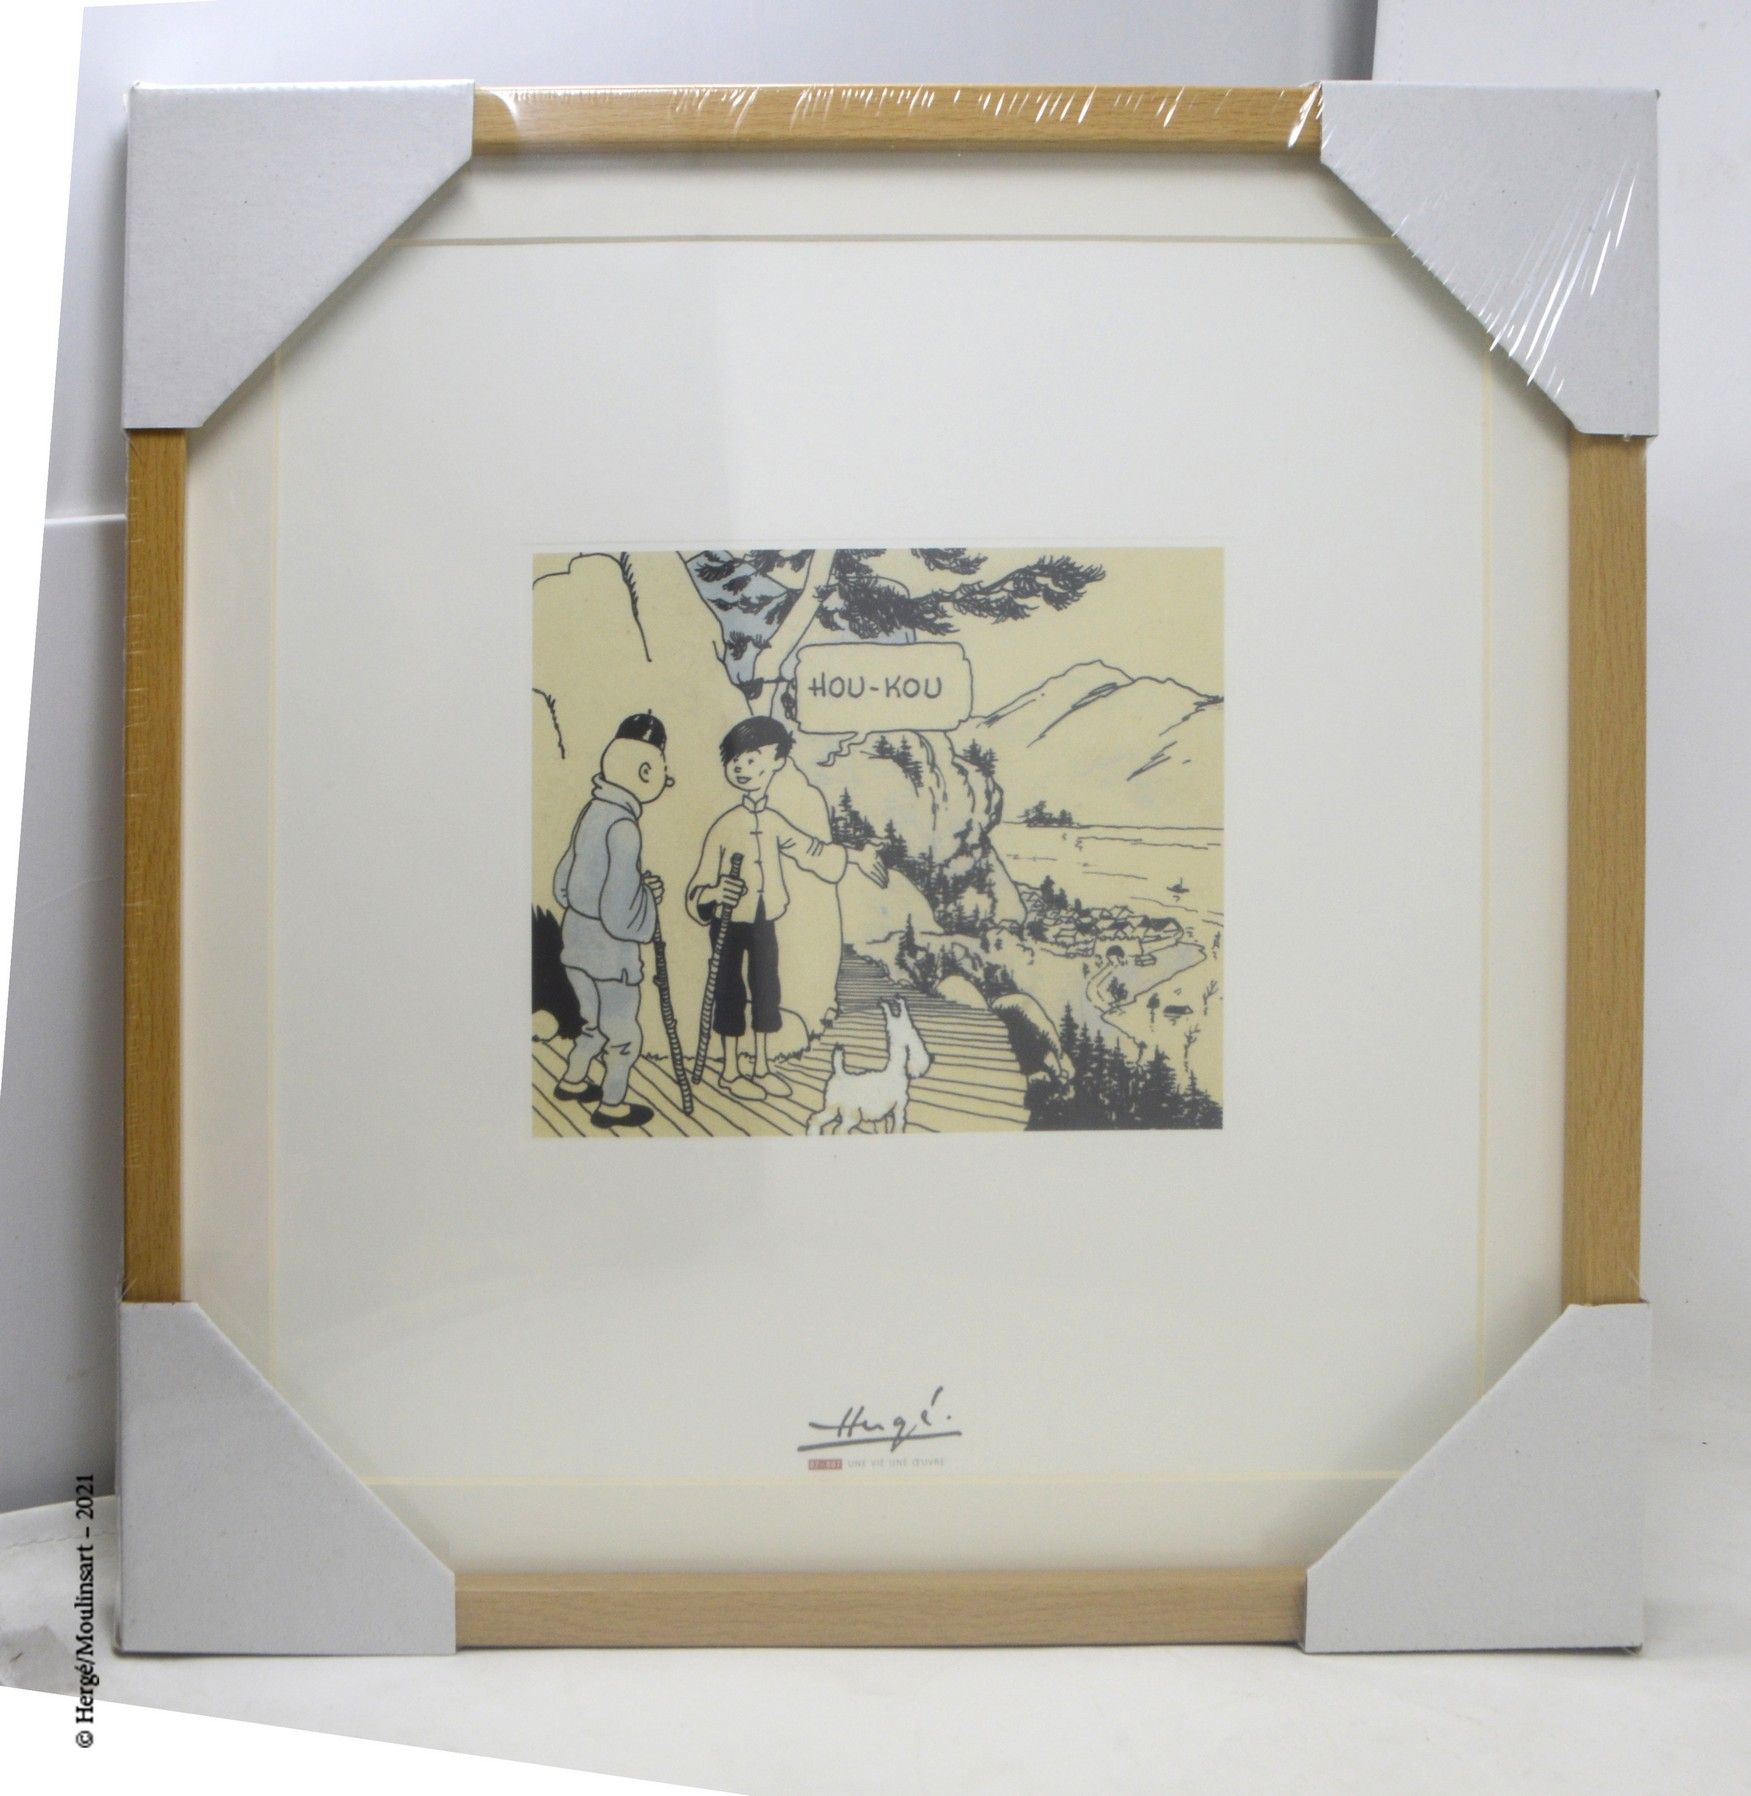 LE LOTUS BLEU HERGÉ/MOULINSART

Lithographie Moulinsart : Hergé, une vie, une œu&hellip;